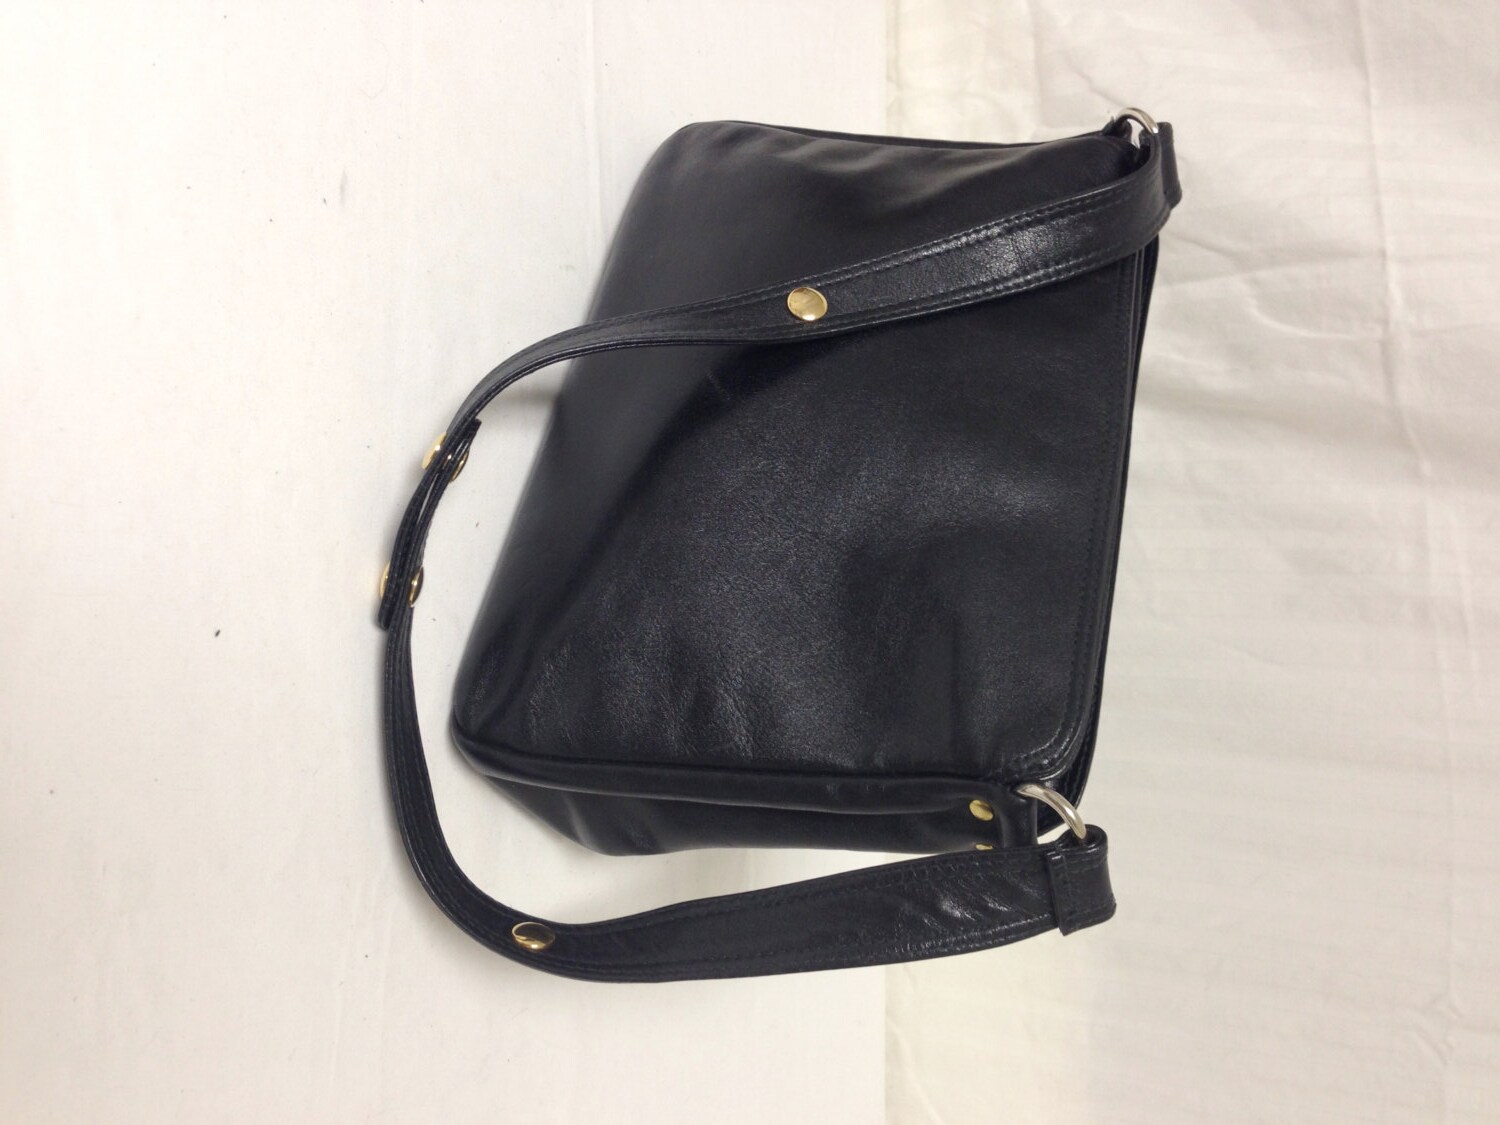 Ganson Leather Purse Shoulder Bag black leather purses